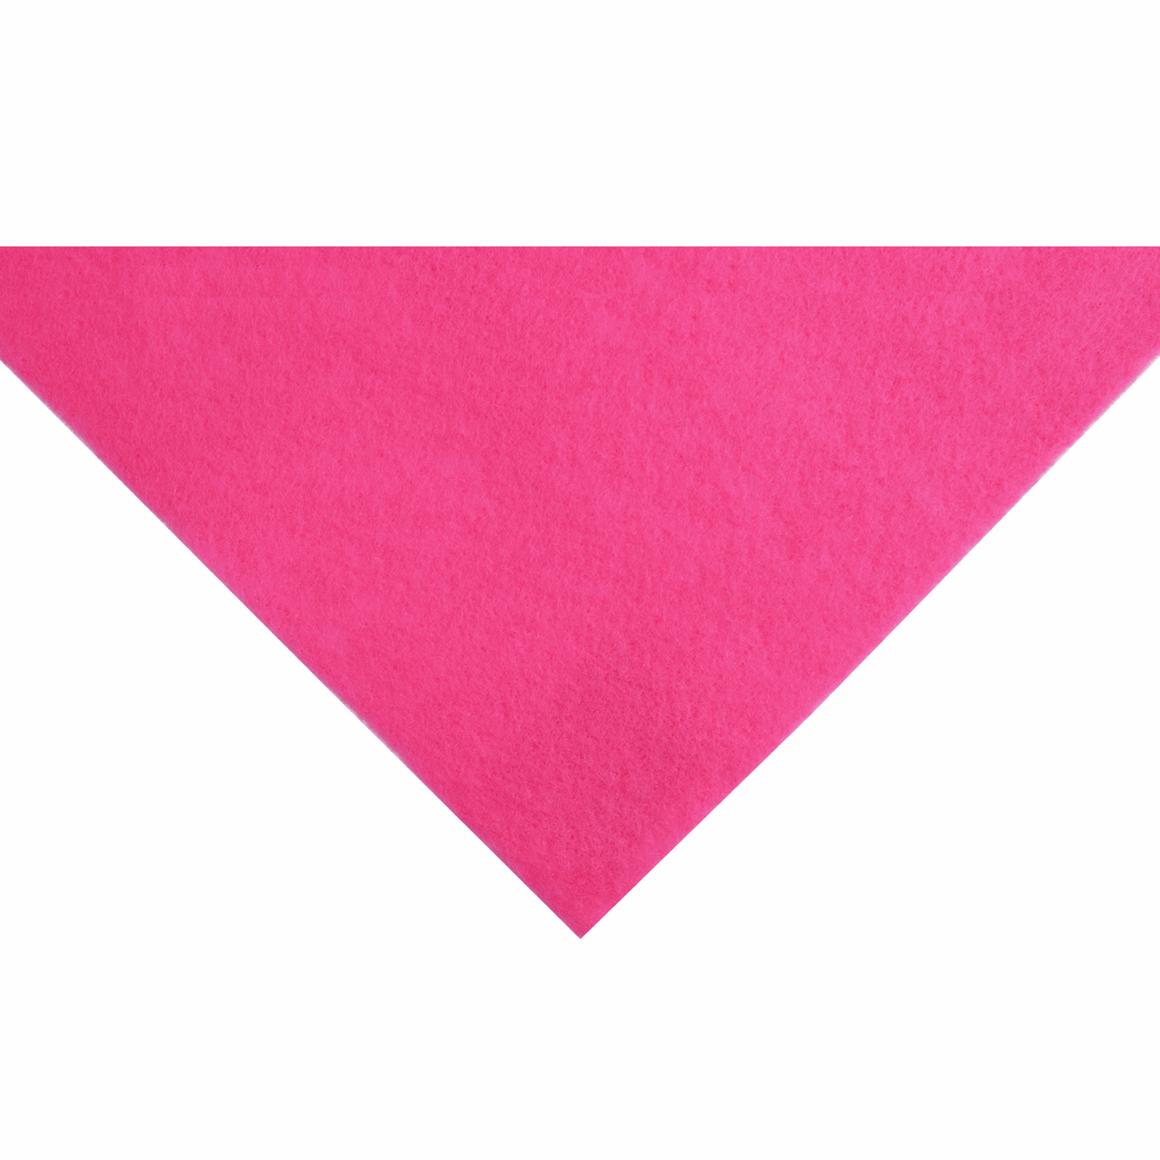 Shocking Pink Acrylic Felt - 1 x A4 sheet (23cm x 30cm | 9 x 12 inches)